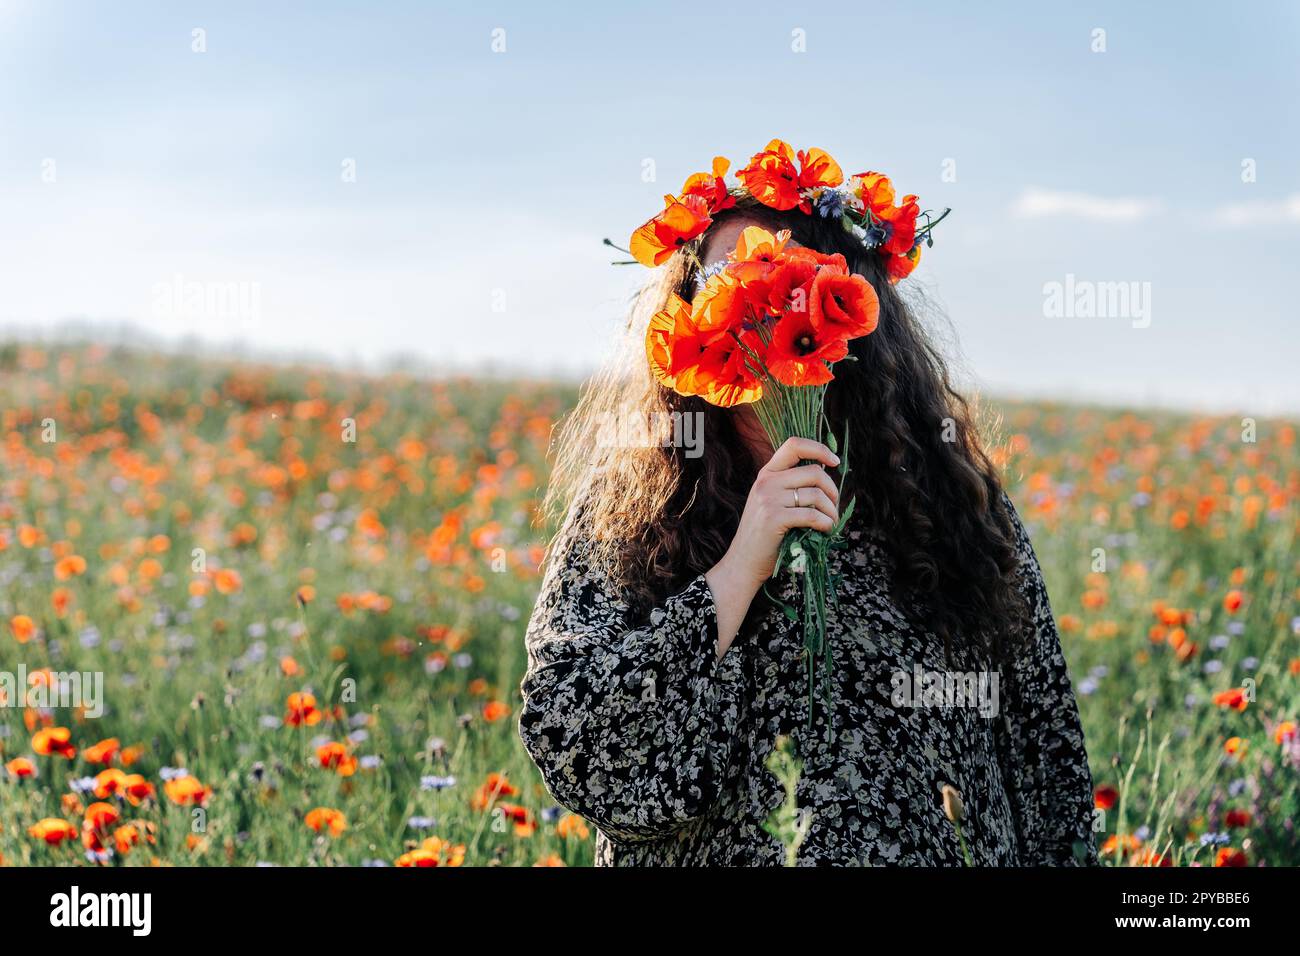 Femme à poil long plus grande taille dans une couronne de coquelicots rouges se dresse parmi un champ de fleurs de prairie et couvre son visage avec un bouquet de coquelicots Banque D'Images